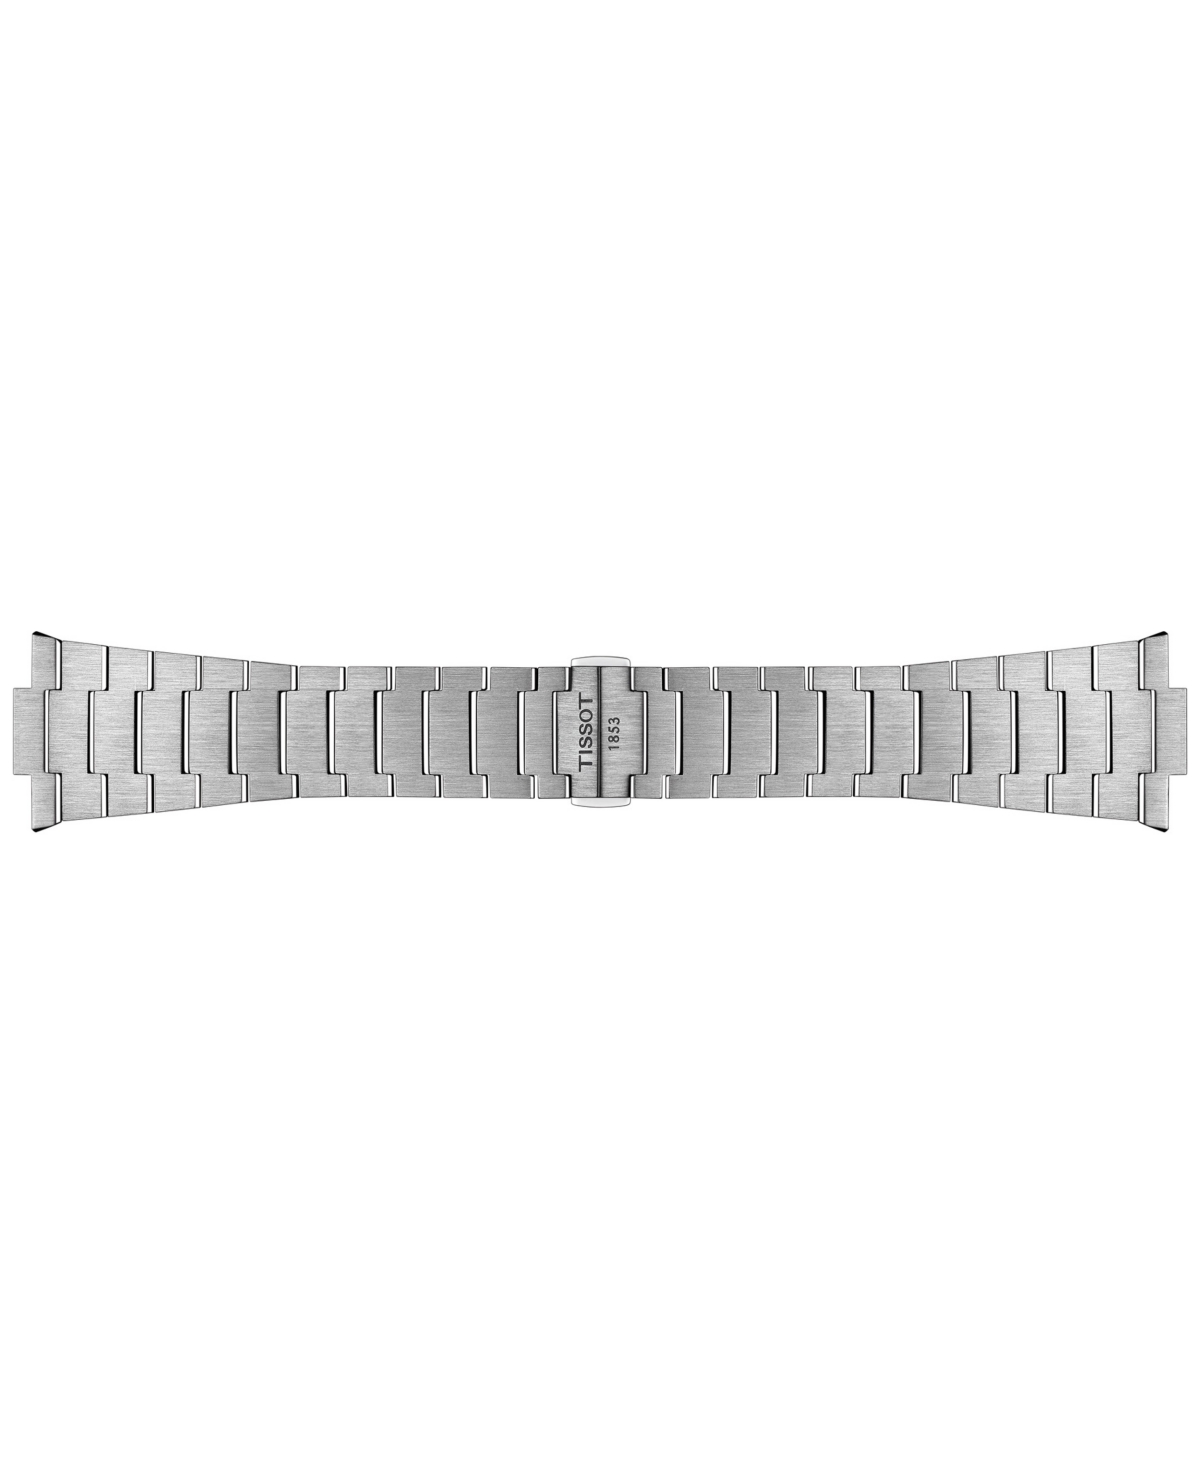 Shop Tissot Men's Swiss Prx Stainless Steel Bracelet Watch 40mm In Silver